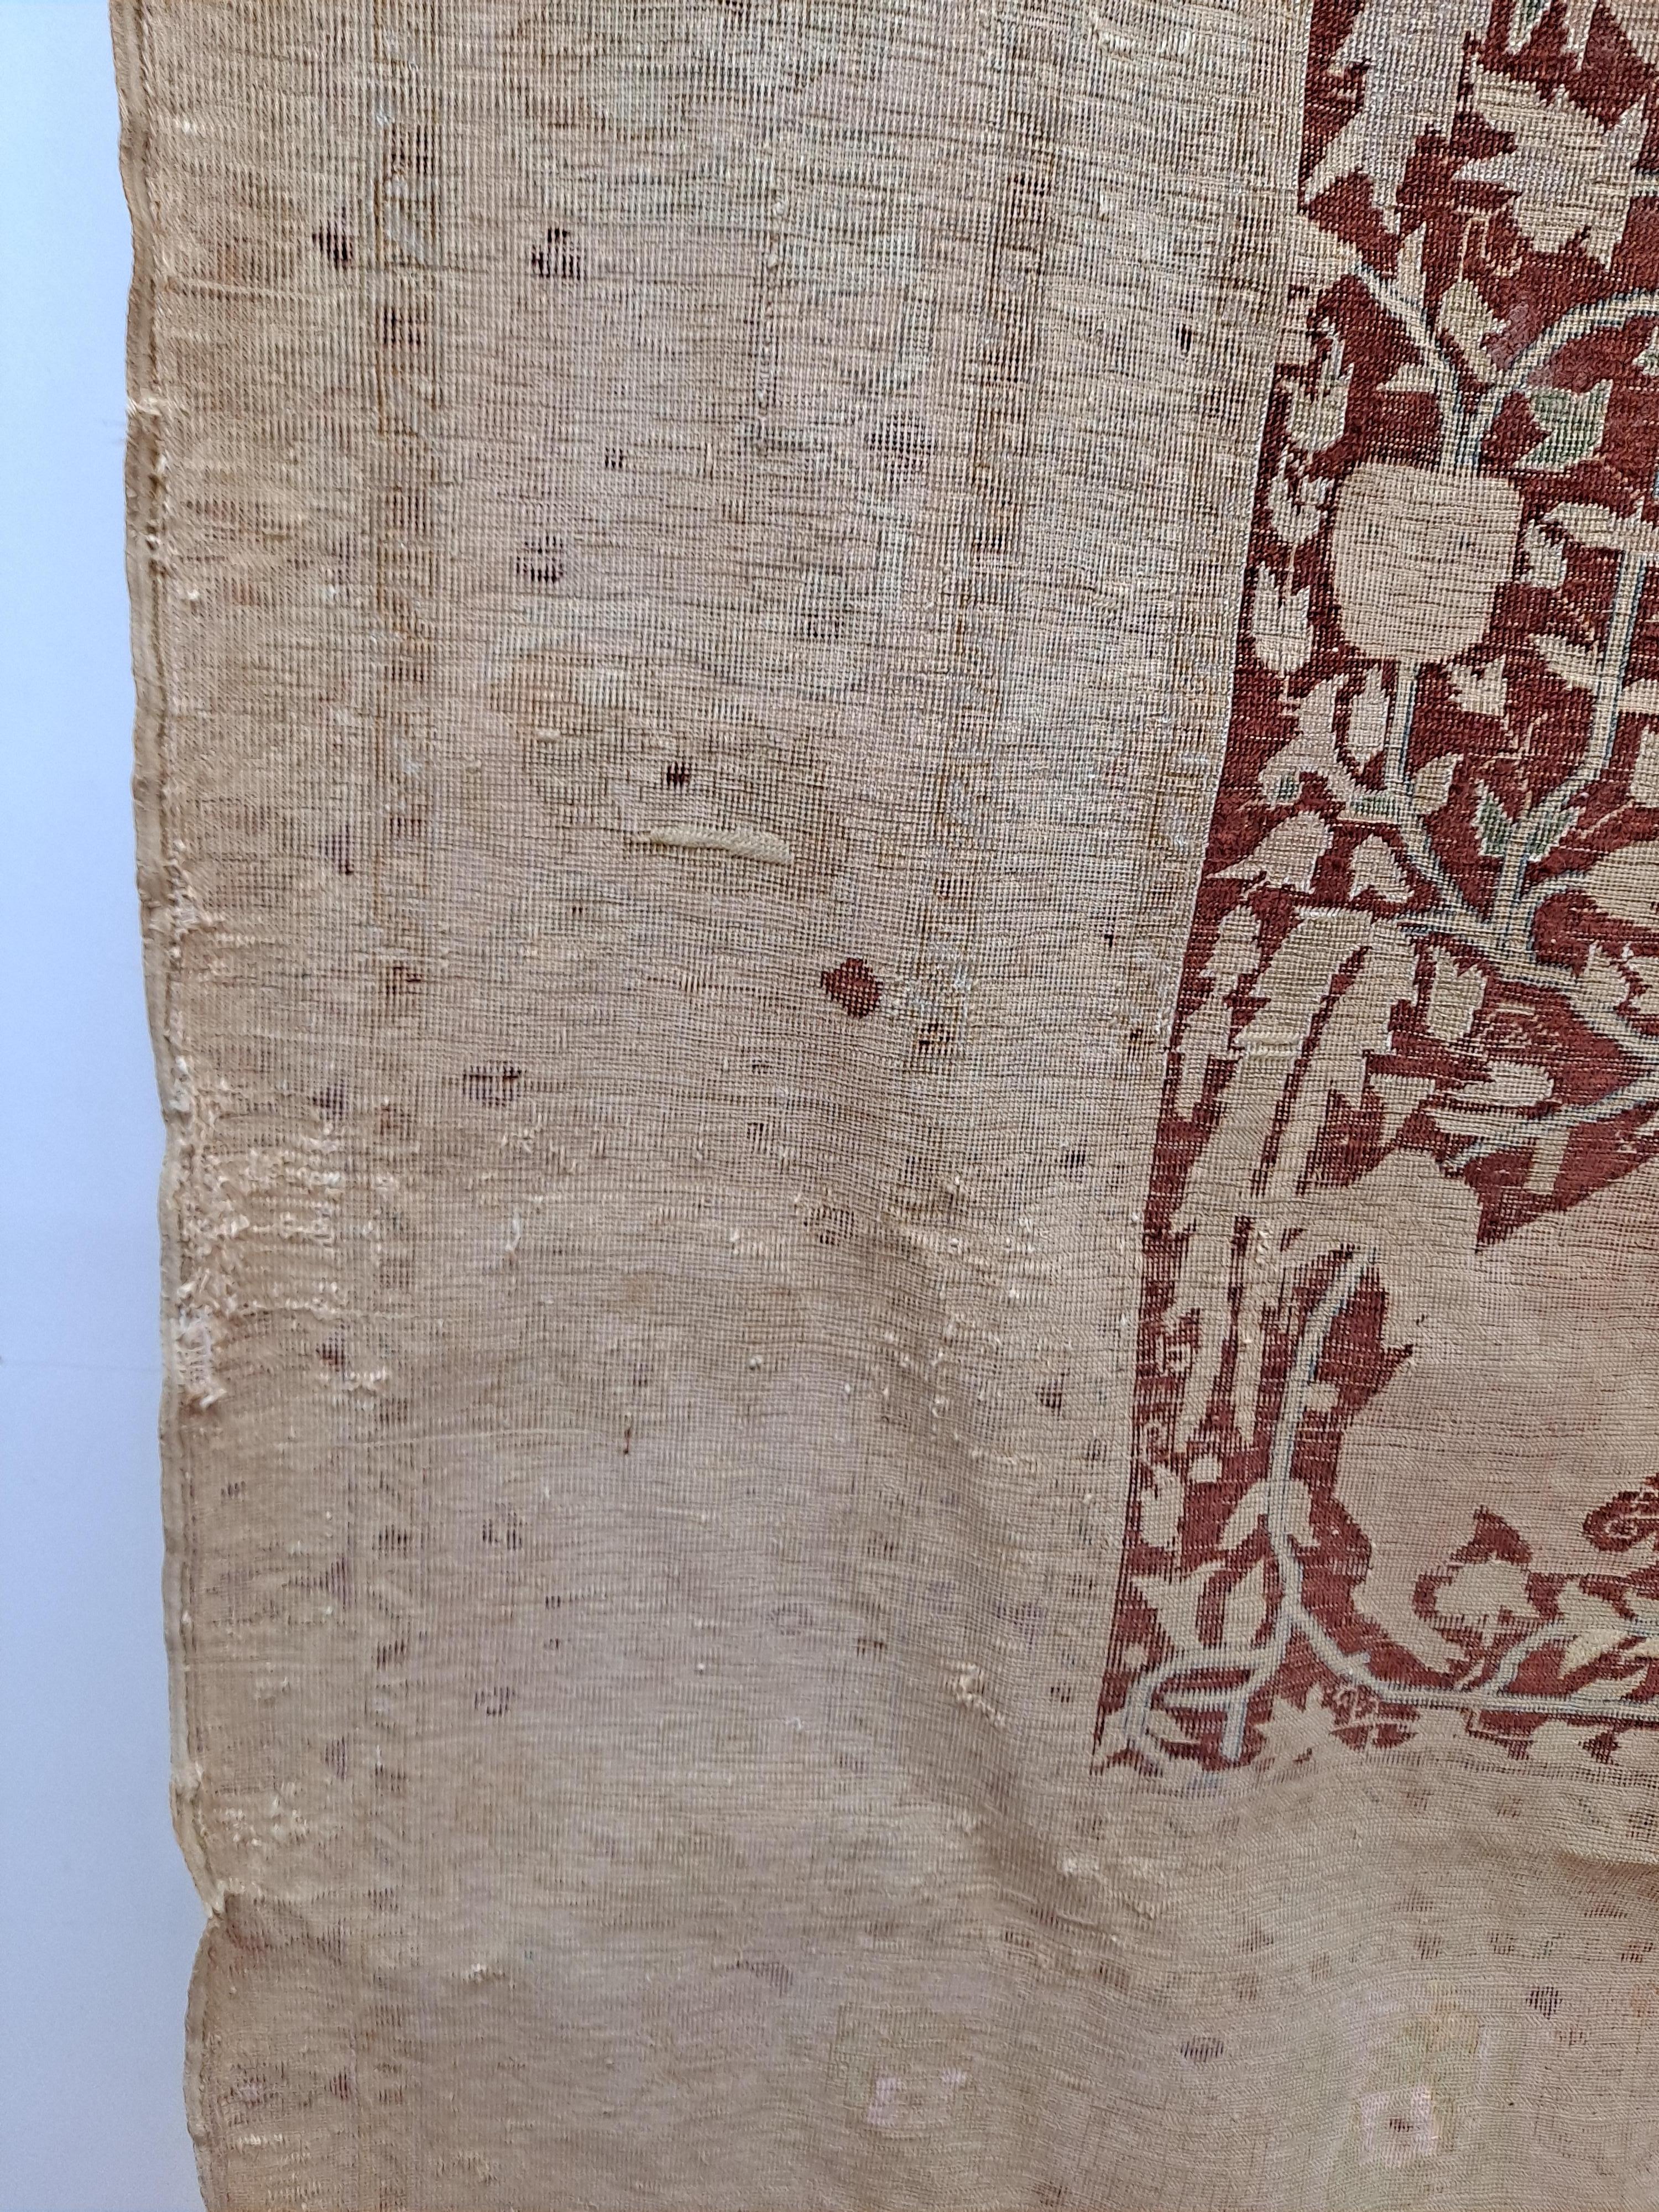 Turkish crimson silk Kayseri rug with vaq-vaq pattern

54.5 x 71.5